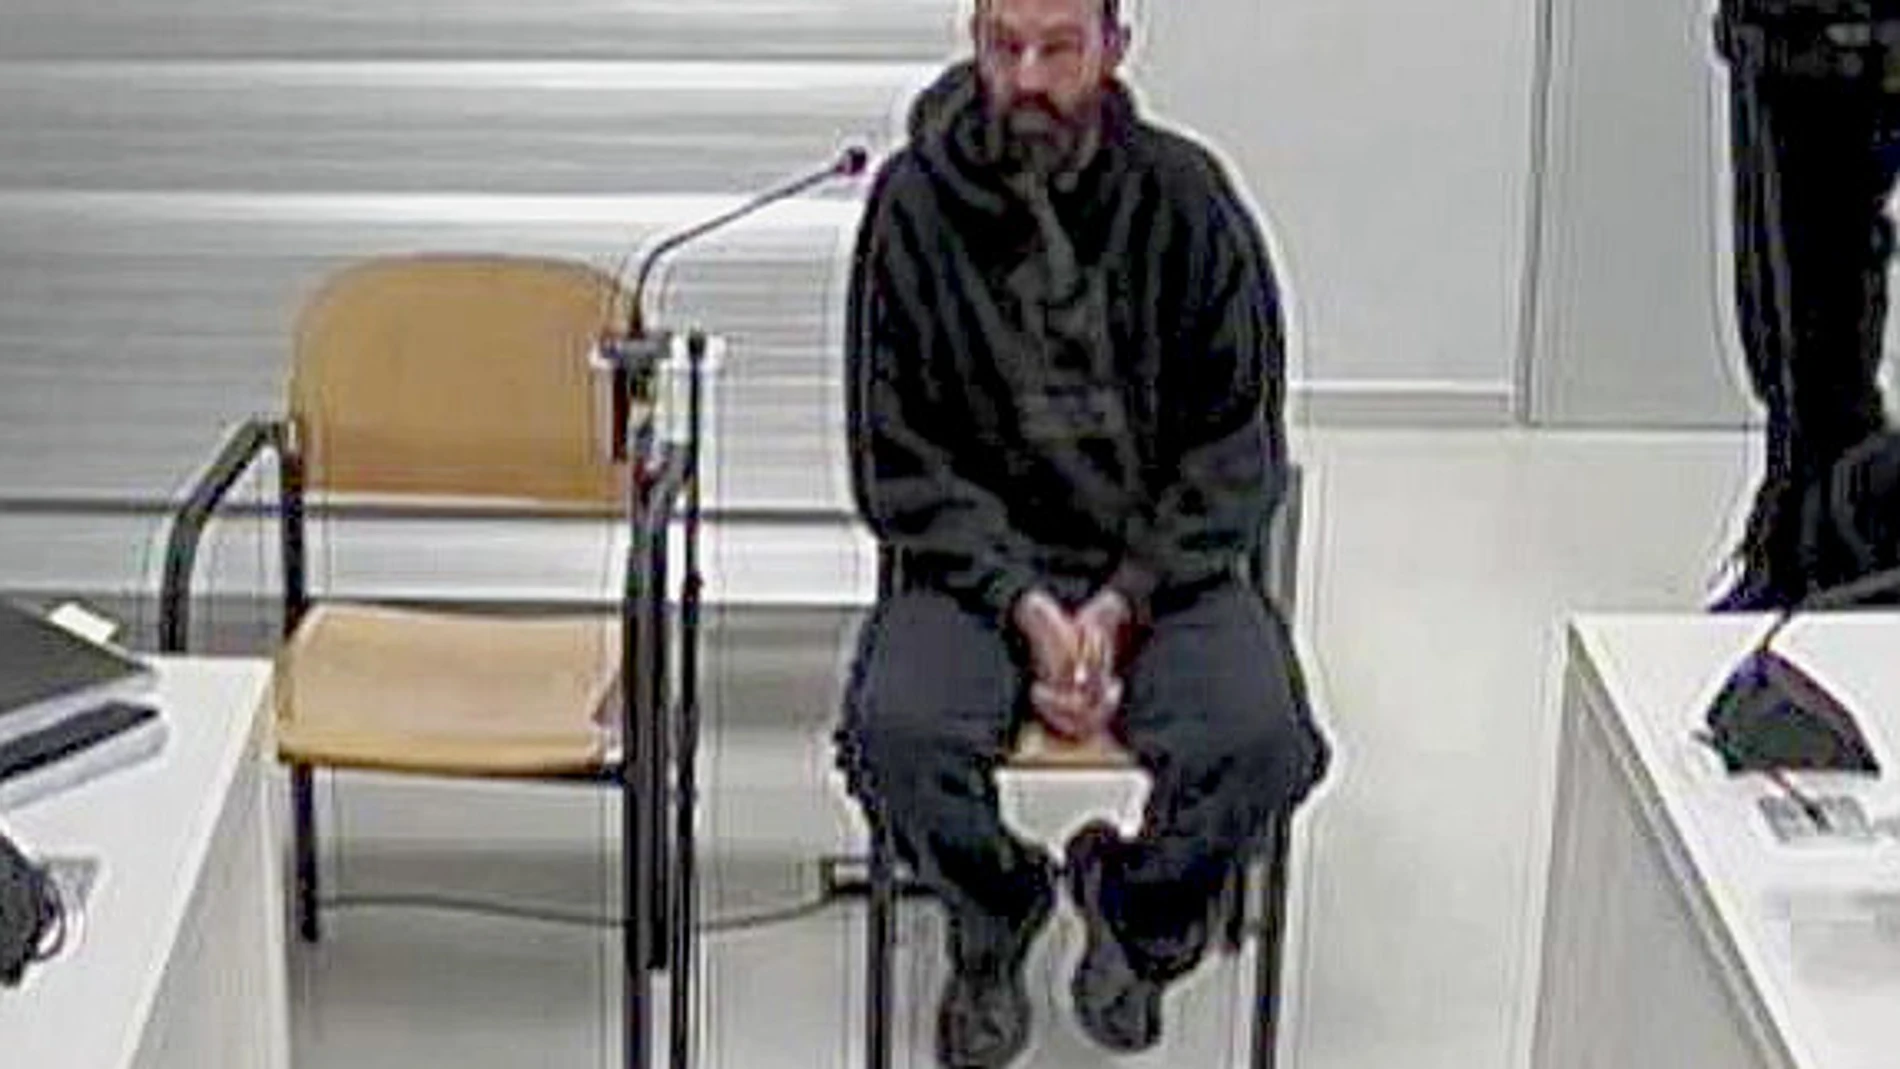 Uno de los integrantes de los CDR detenidos en la "operación Judas", durante su declaración ante el juez en la Audiencia Nacional.